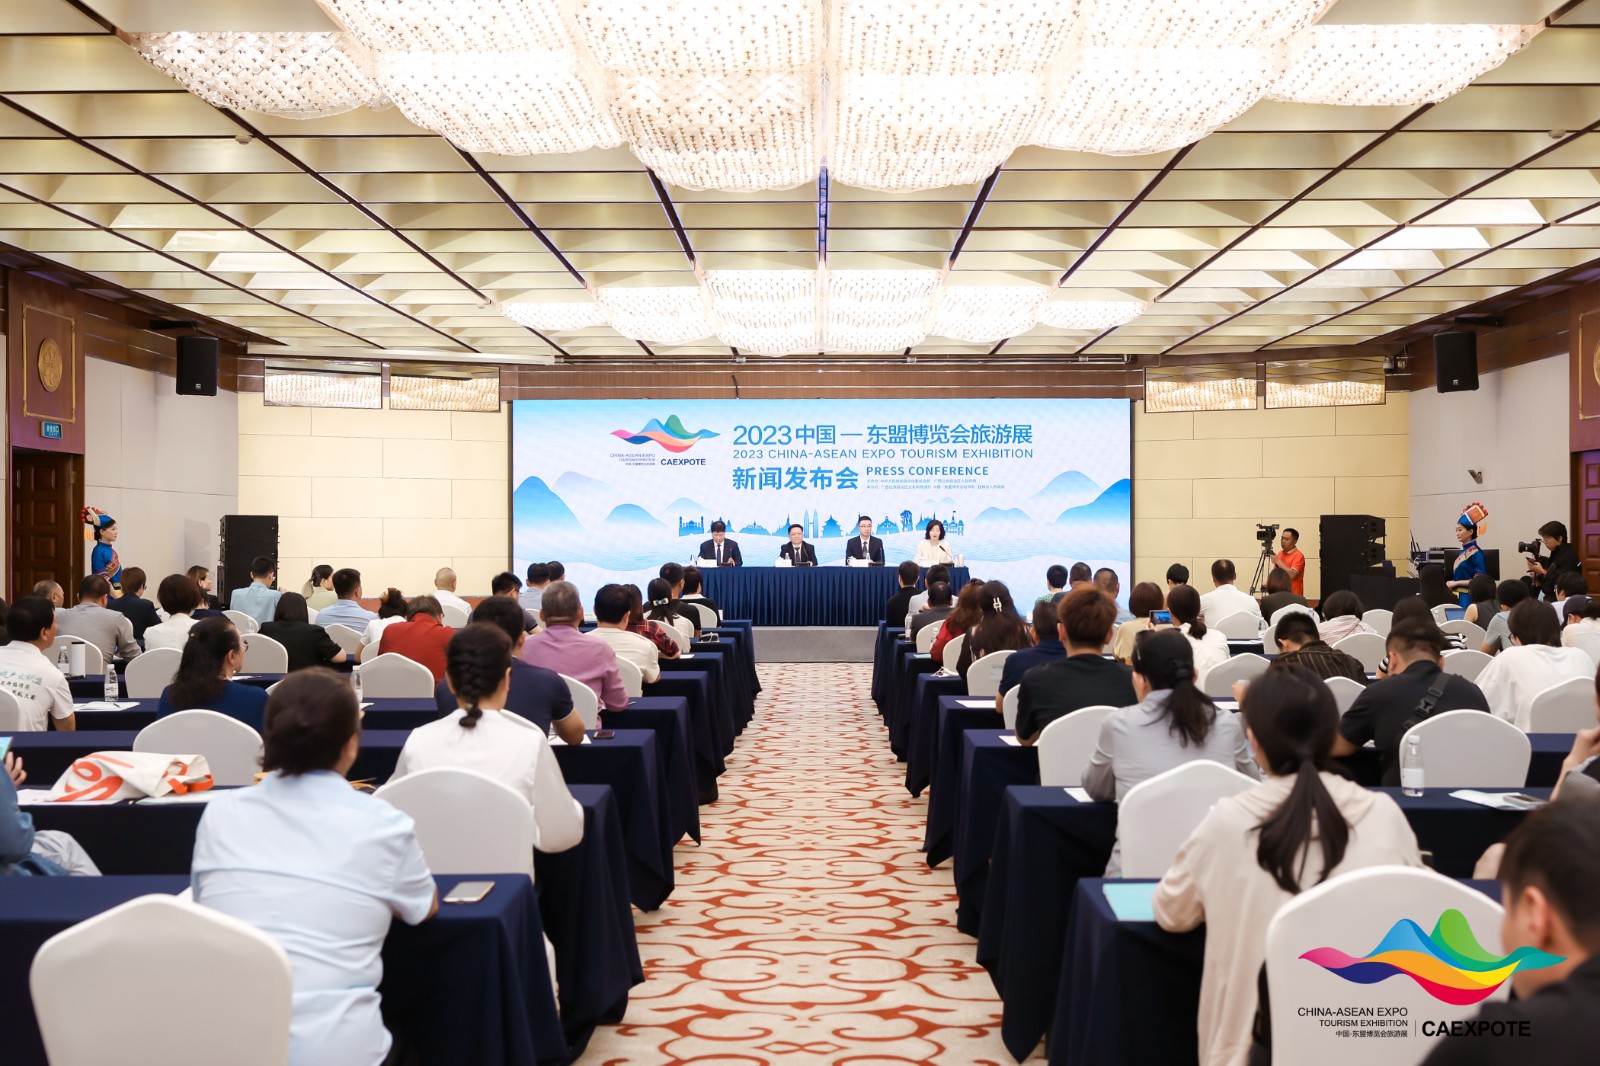 2023中国—东盟博览会旅游展将于10月13日在桂林开幕